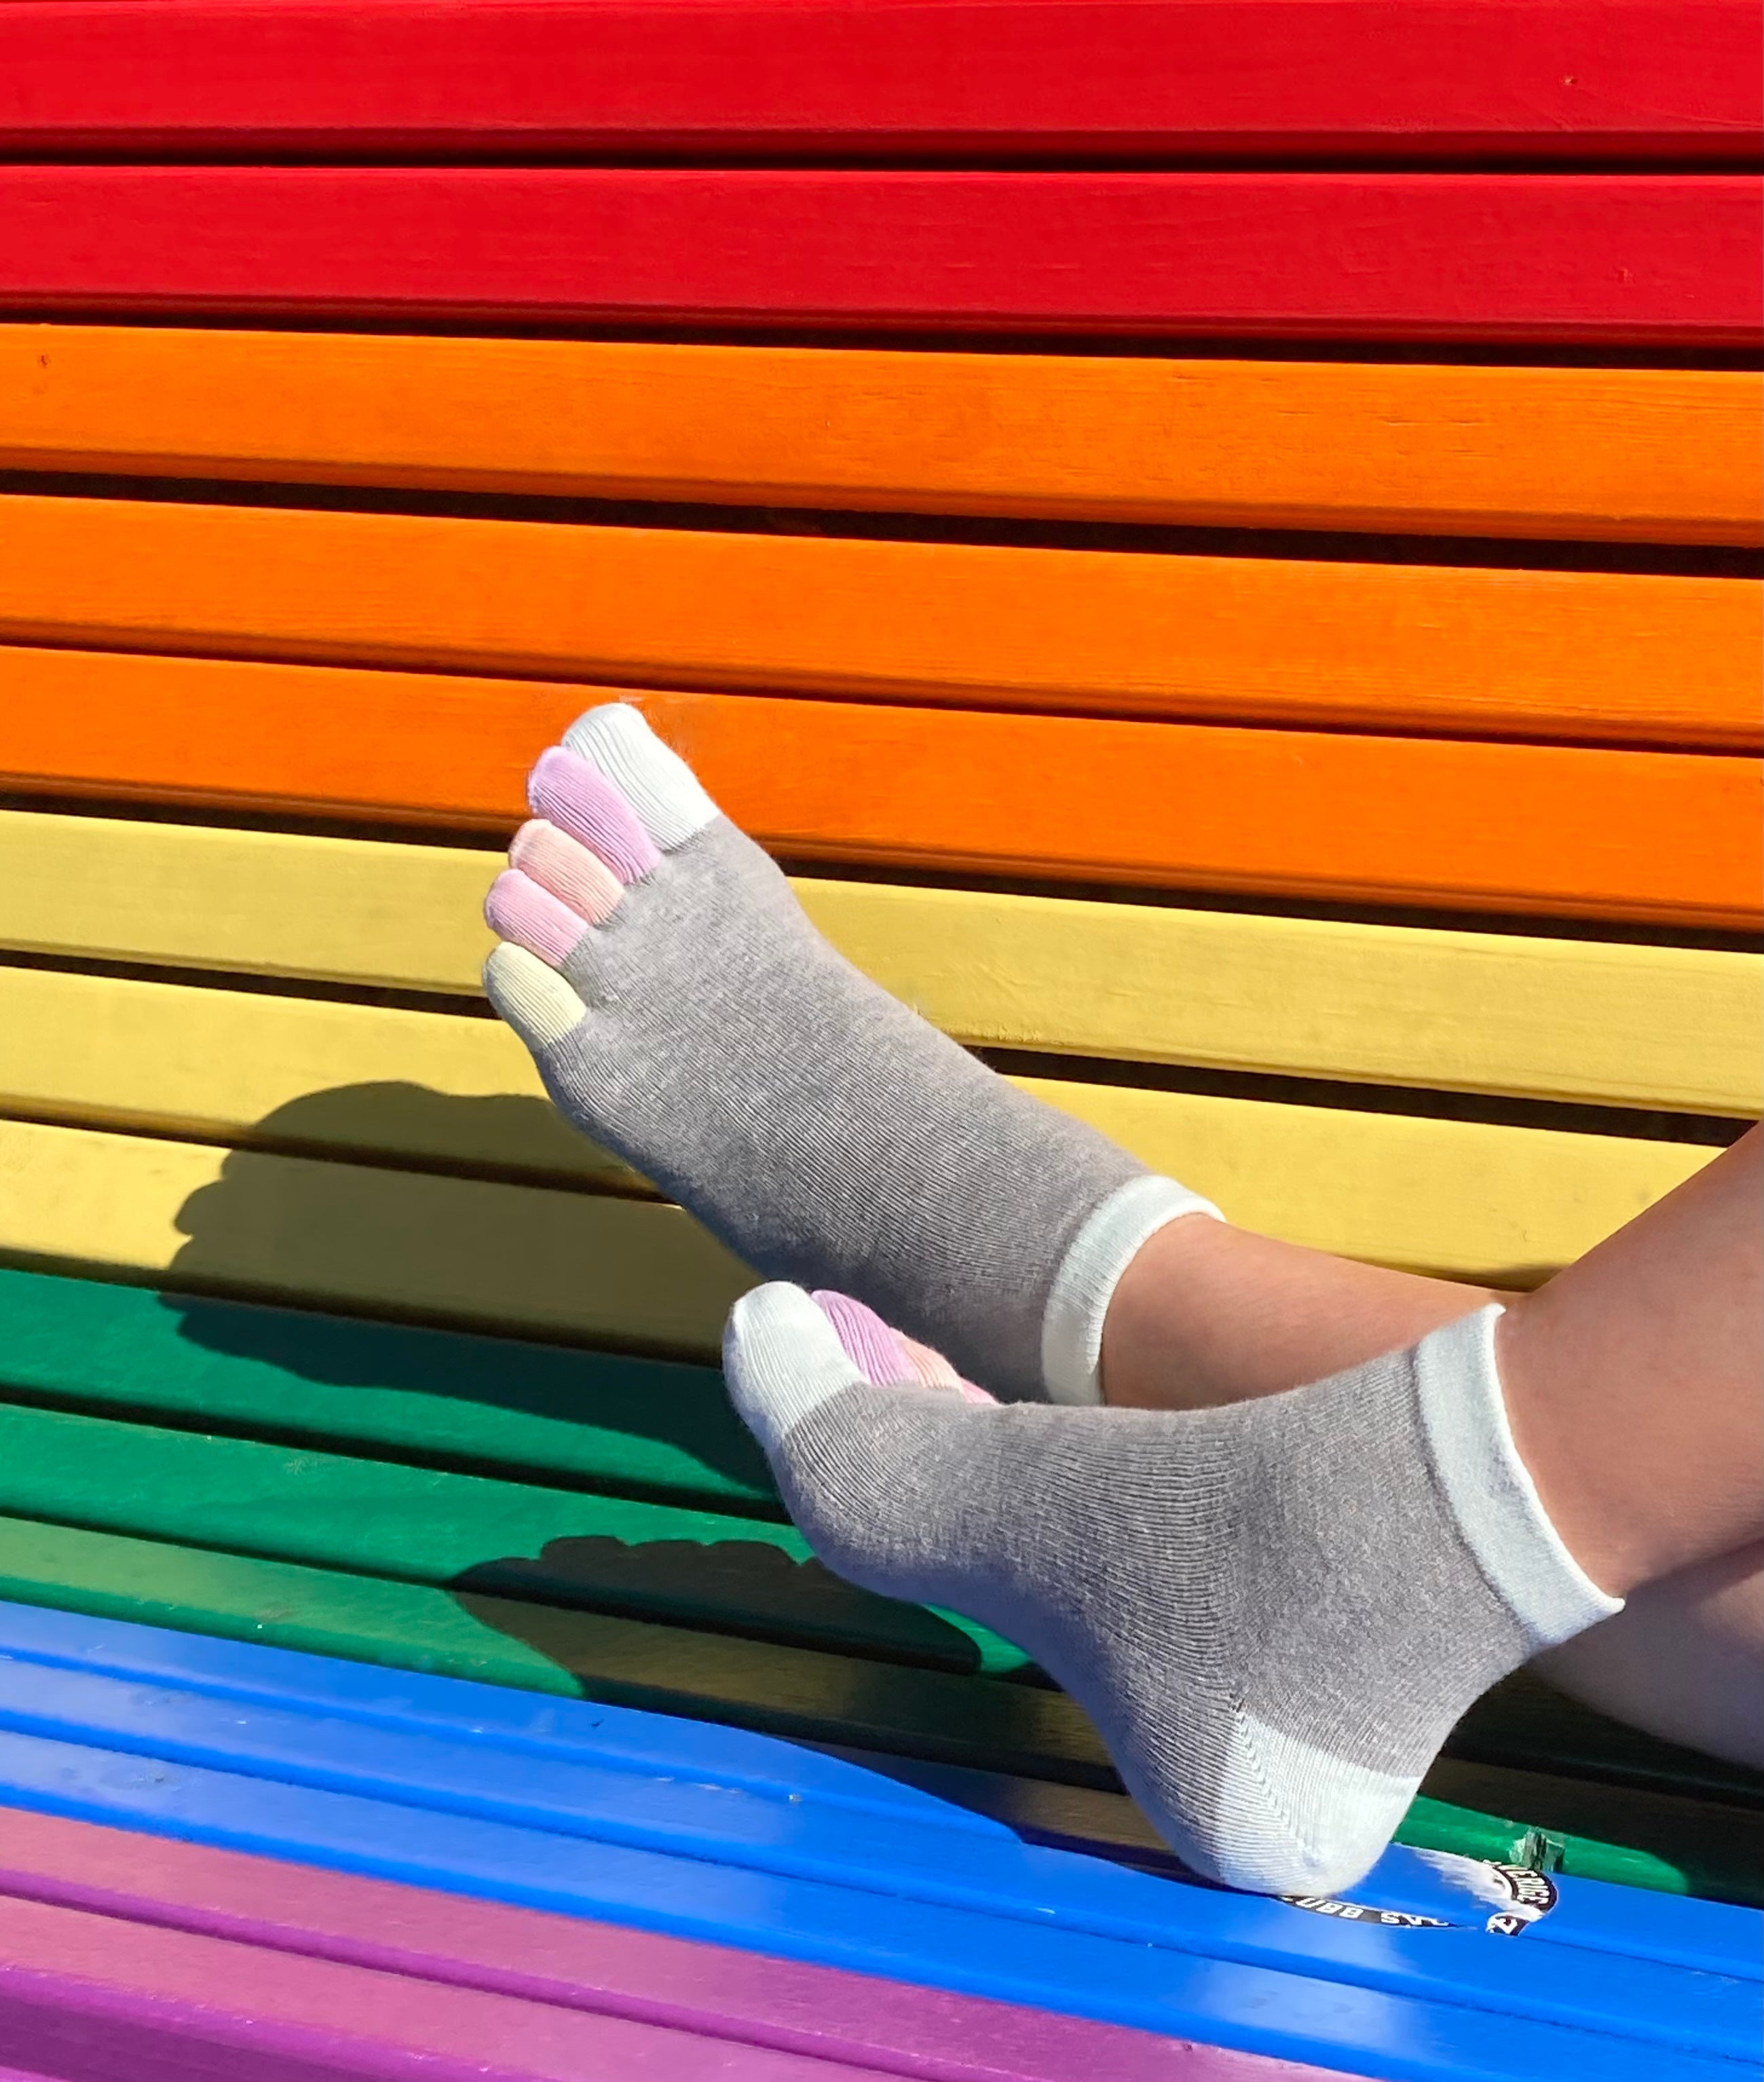 Rainbows, calcetines cortos con punteras de colores - Knitido®.